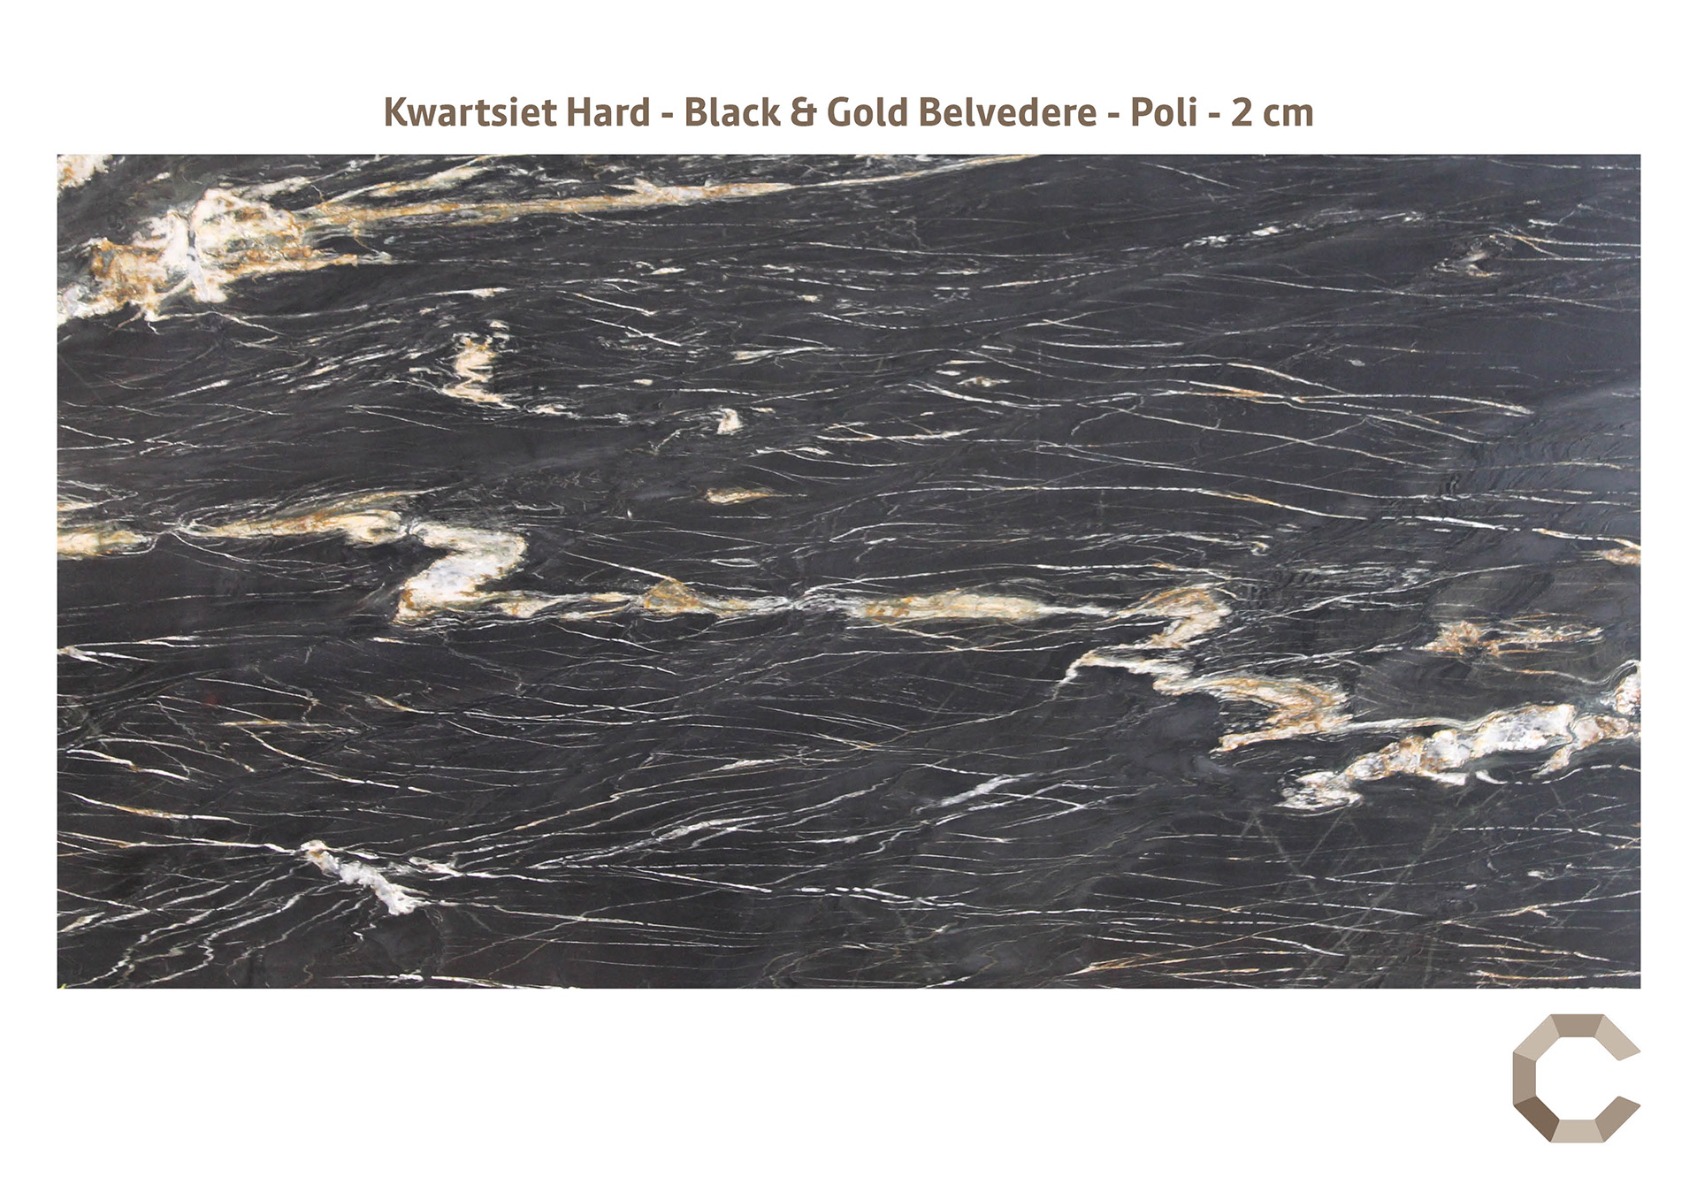 Kwartsiet_Hard_-_Black_Gold_Belvedere_-_Poli